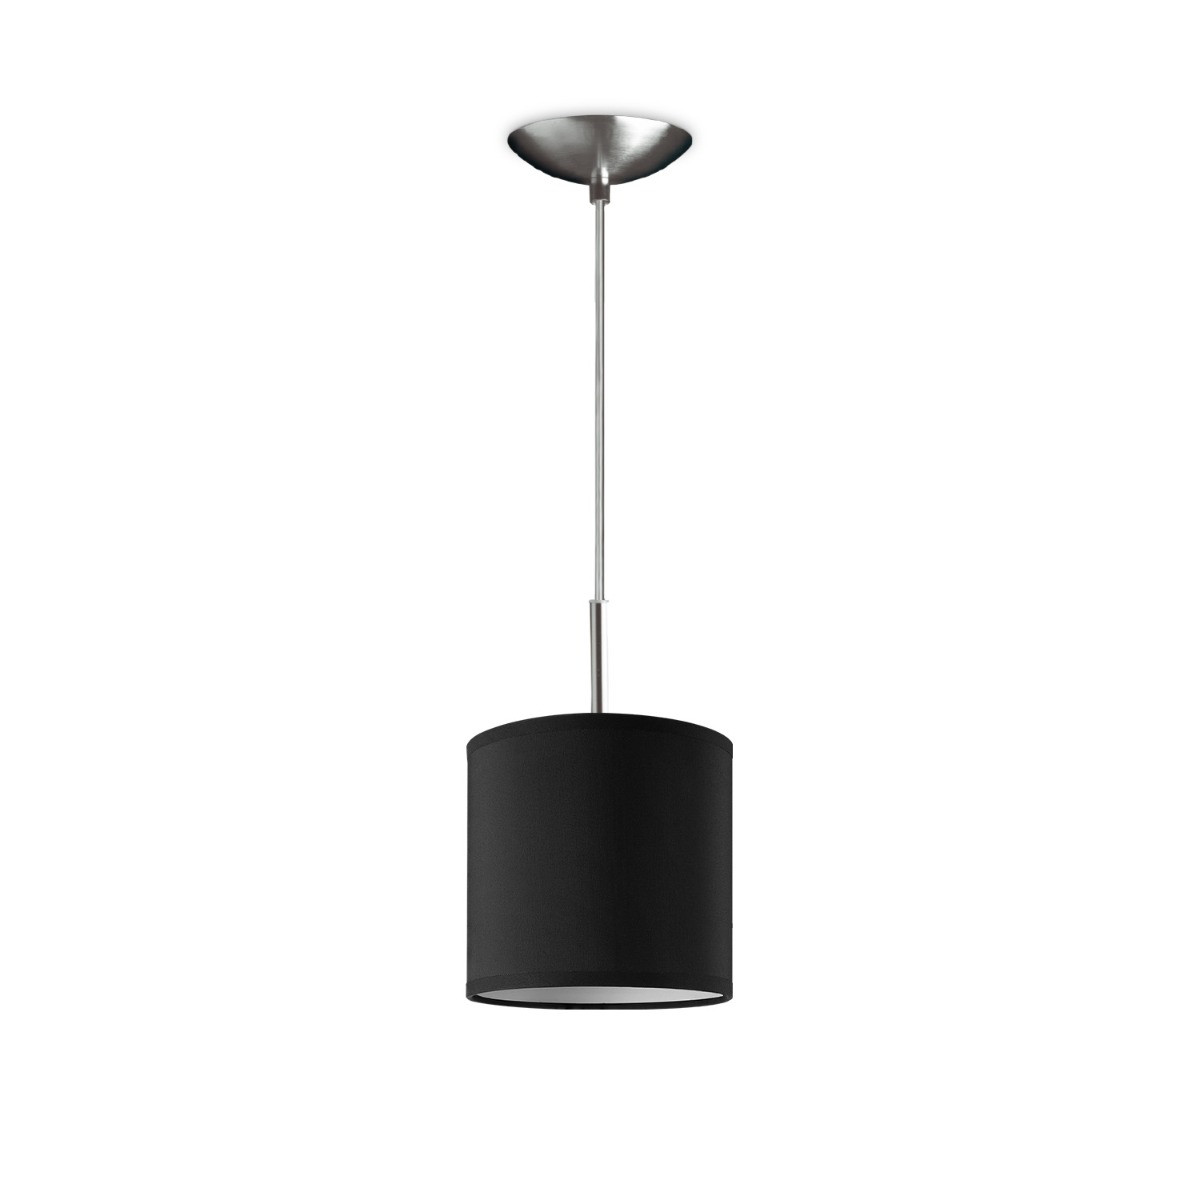 Light depot - hanglamp tube deluxe bling Ø 16 cm - zwart - Outlet